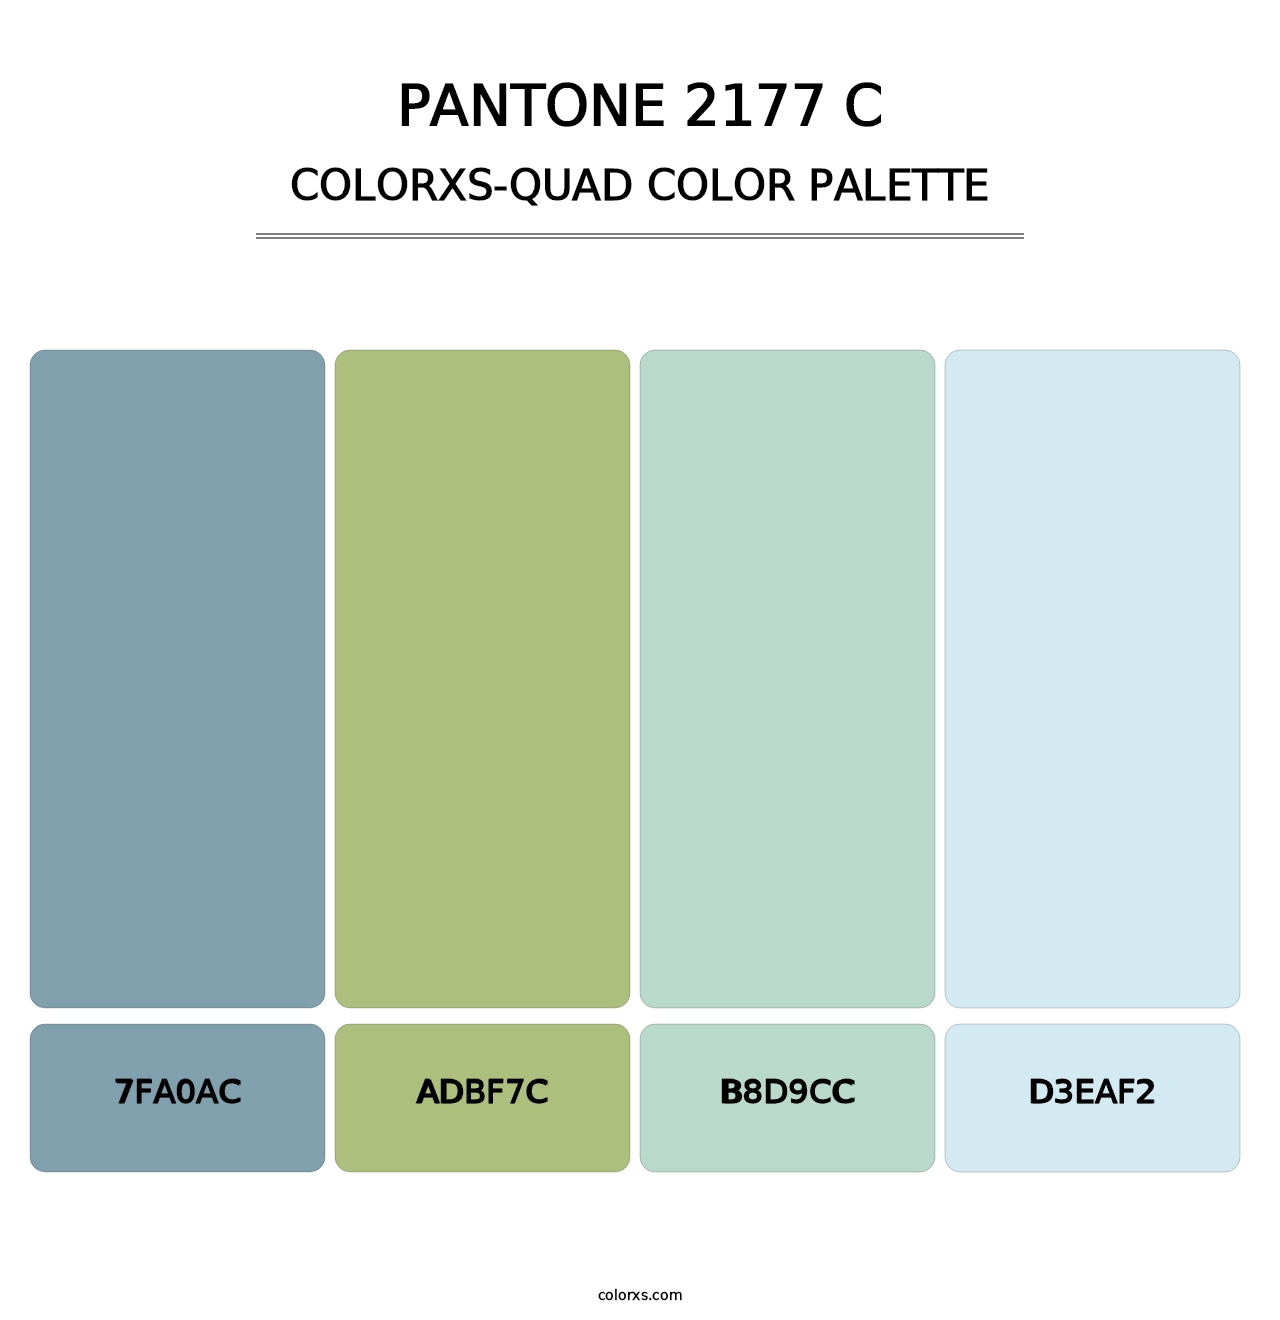 PANTONE 2177 C - Colorxs Quad Palette